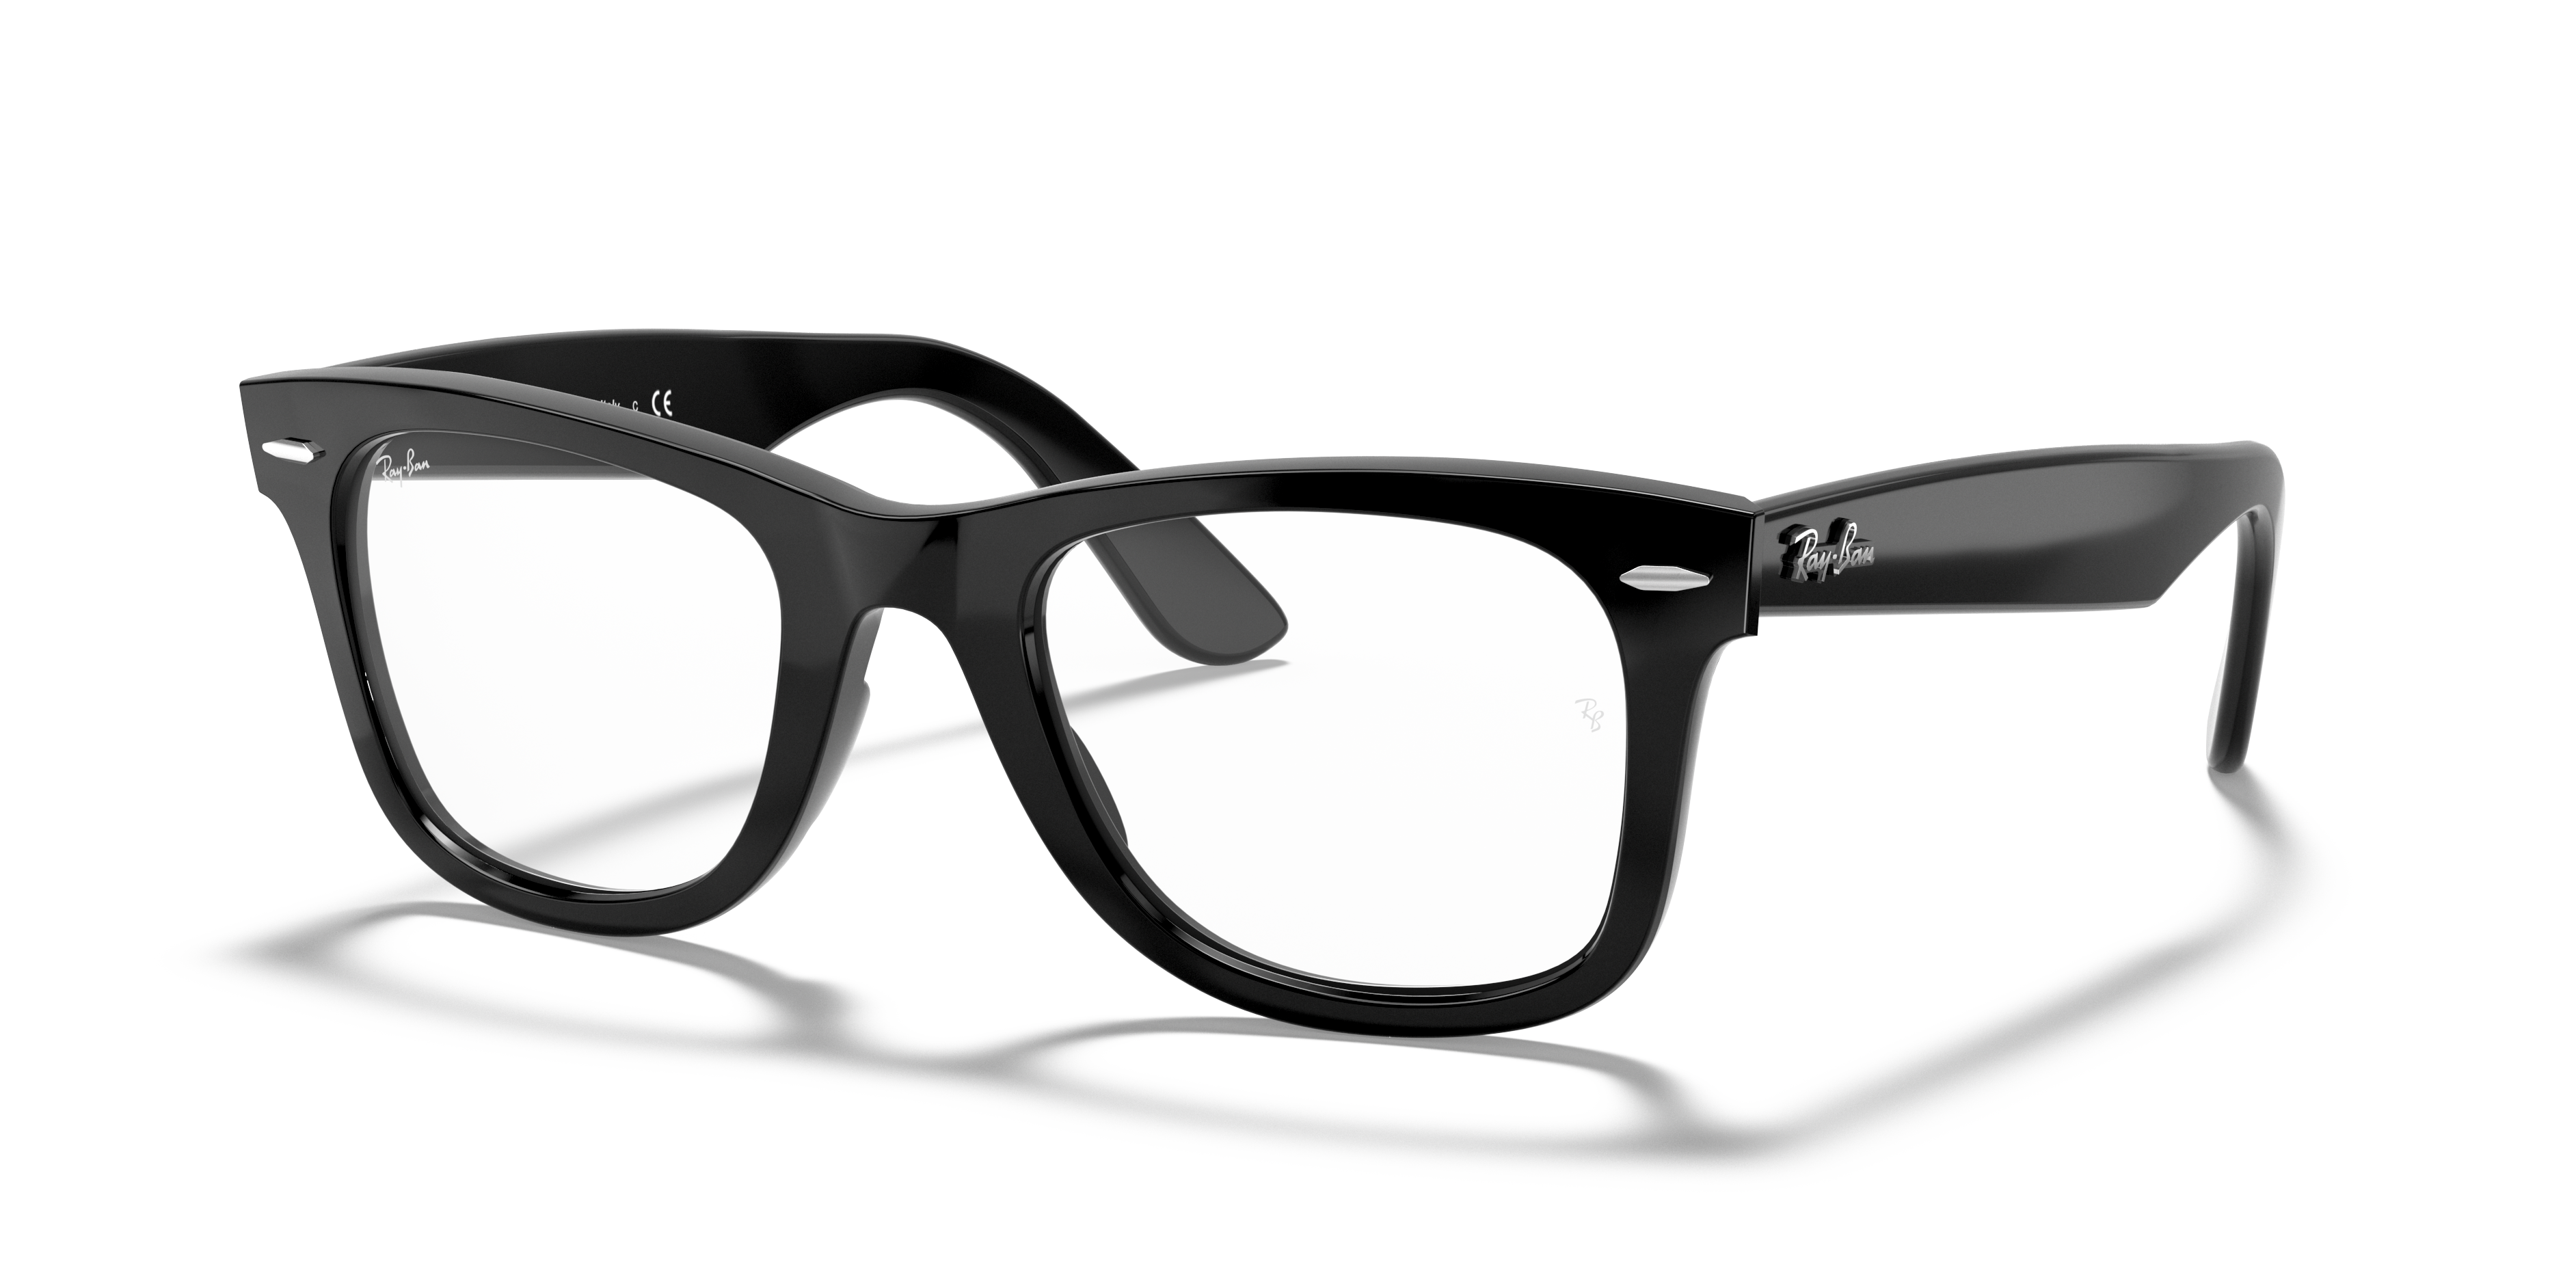 Ocurrir combinar tienda LensCrafters®: gafas oftálmicas graduadas y lentes de contacto​​​​​​​